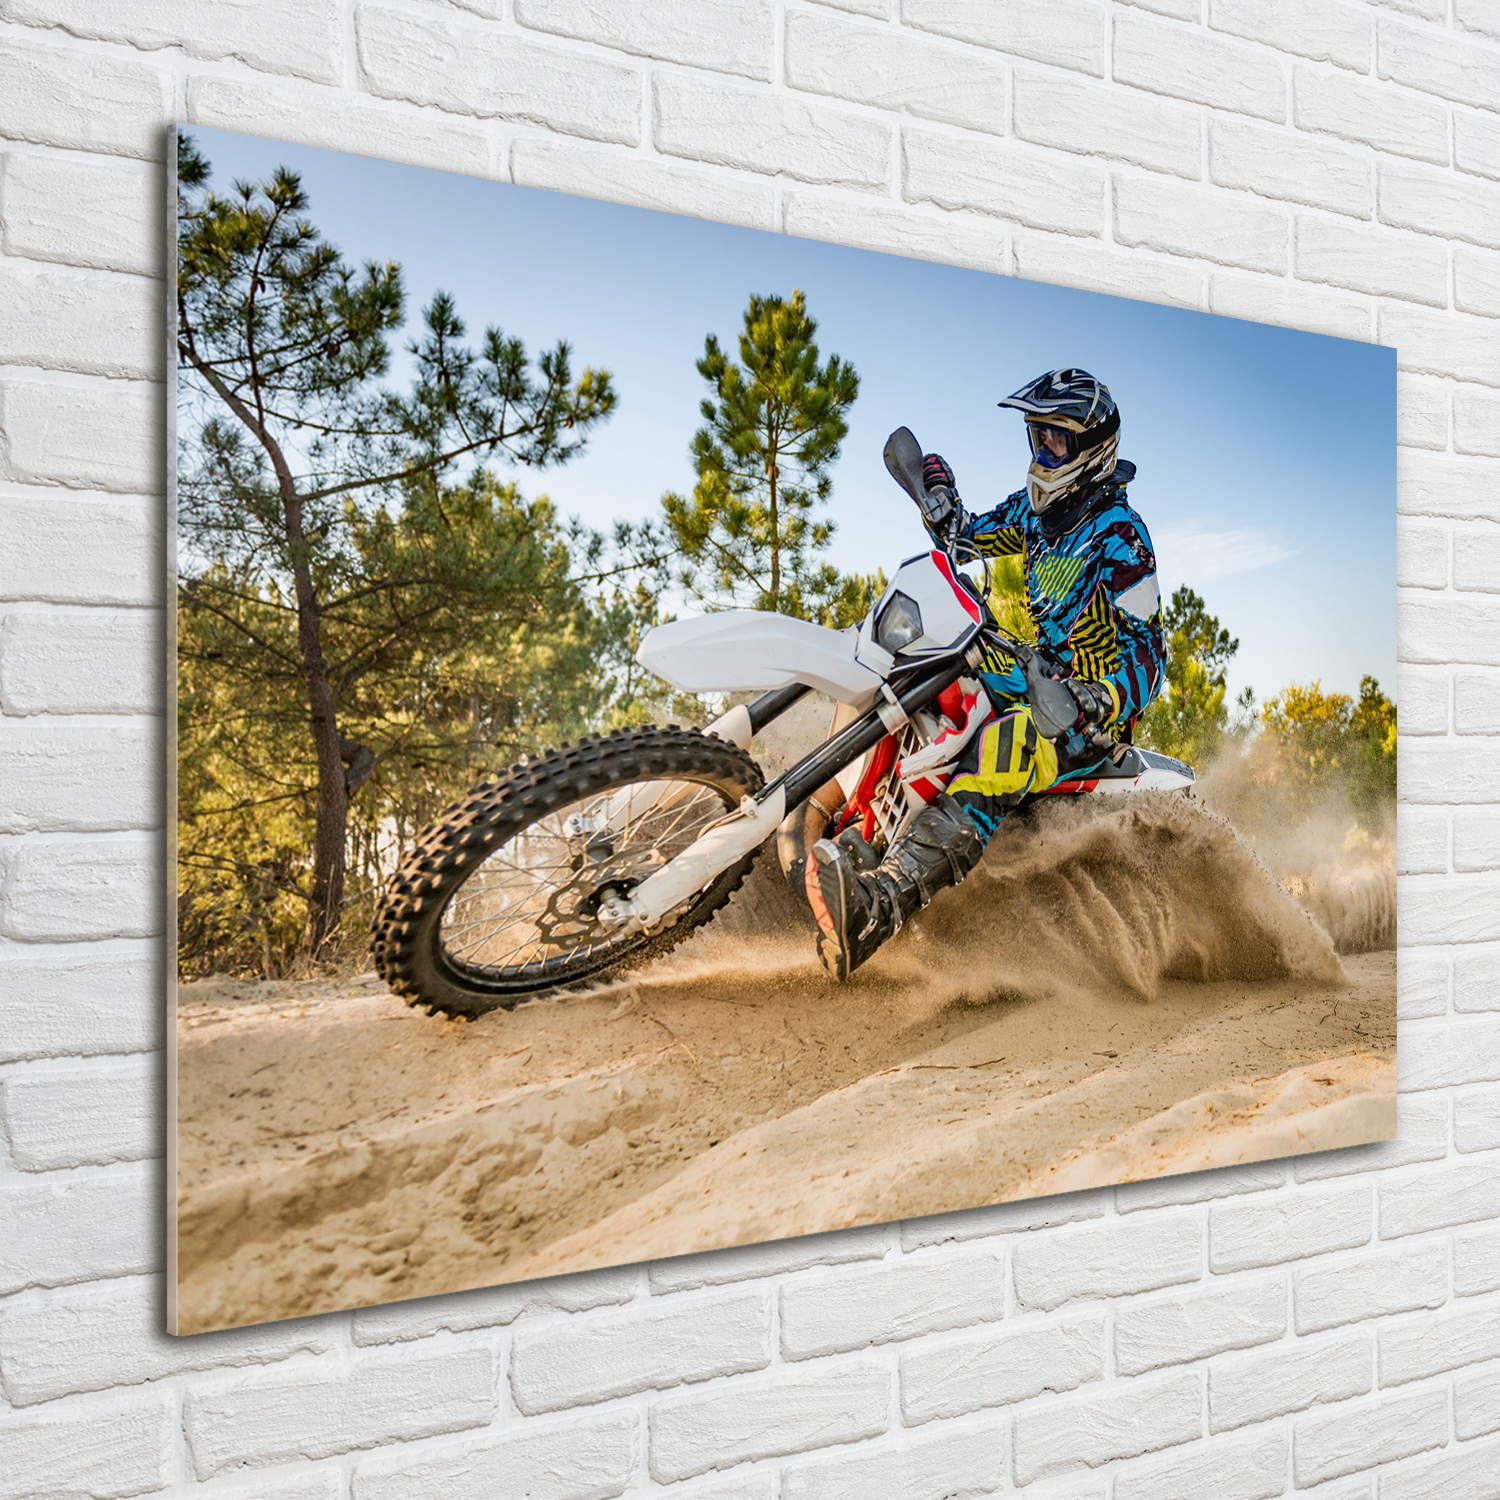 Glas-Bild Wandbilder Druck auf Glas 100x70 Deko Sport Motocross